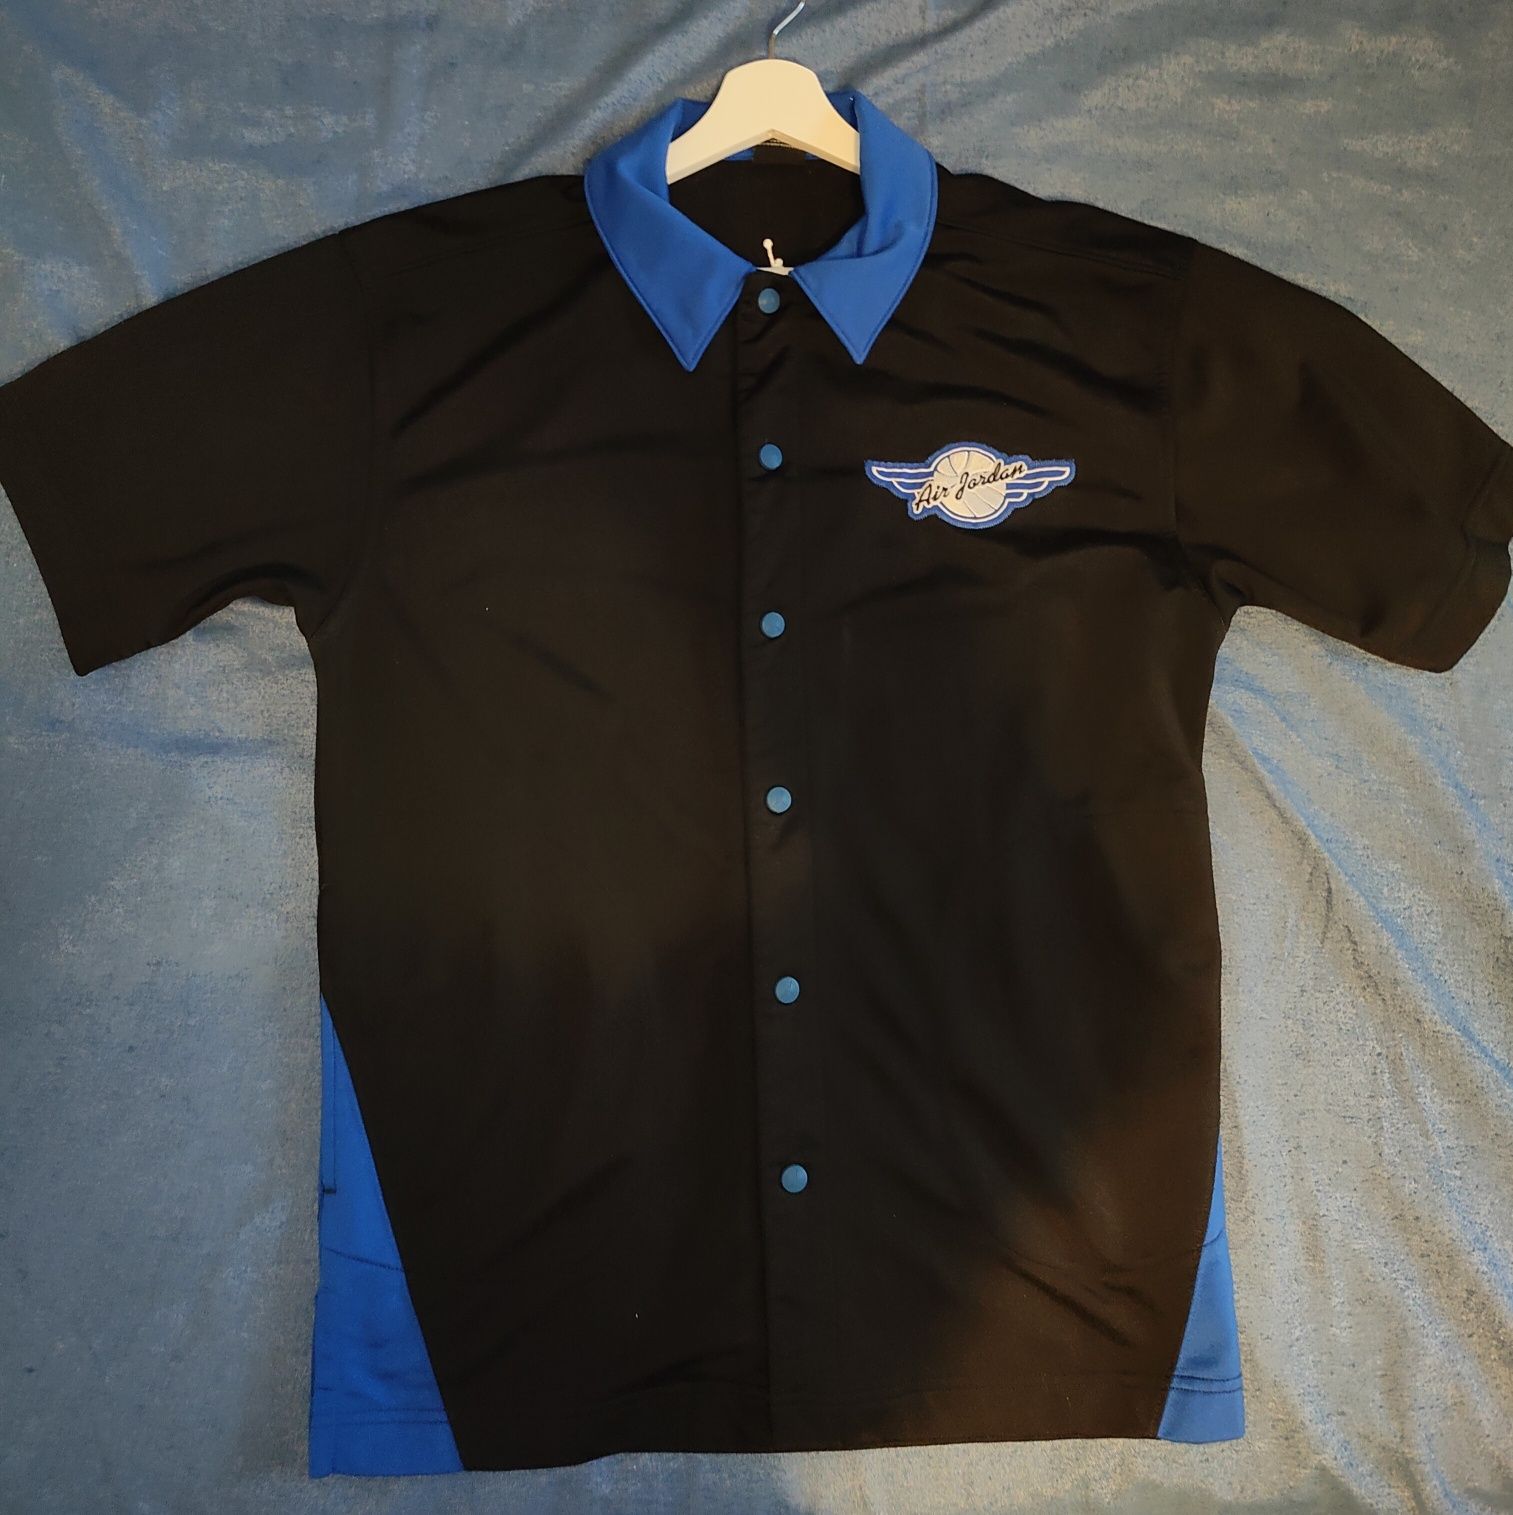 Koszulka Air Jordan czarno-niebieska rozm. M  rozgrzewkowa koszykówka